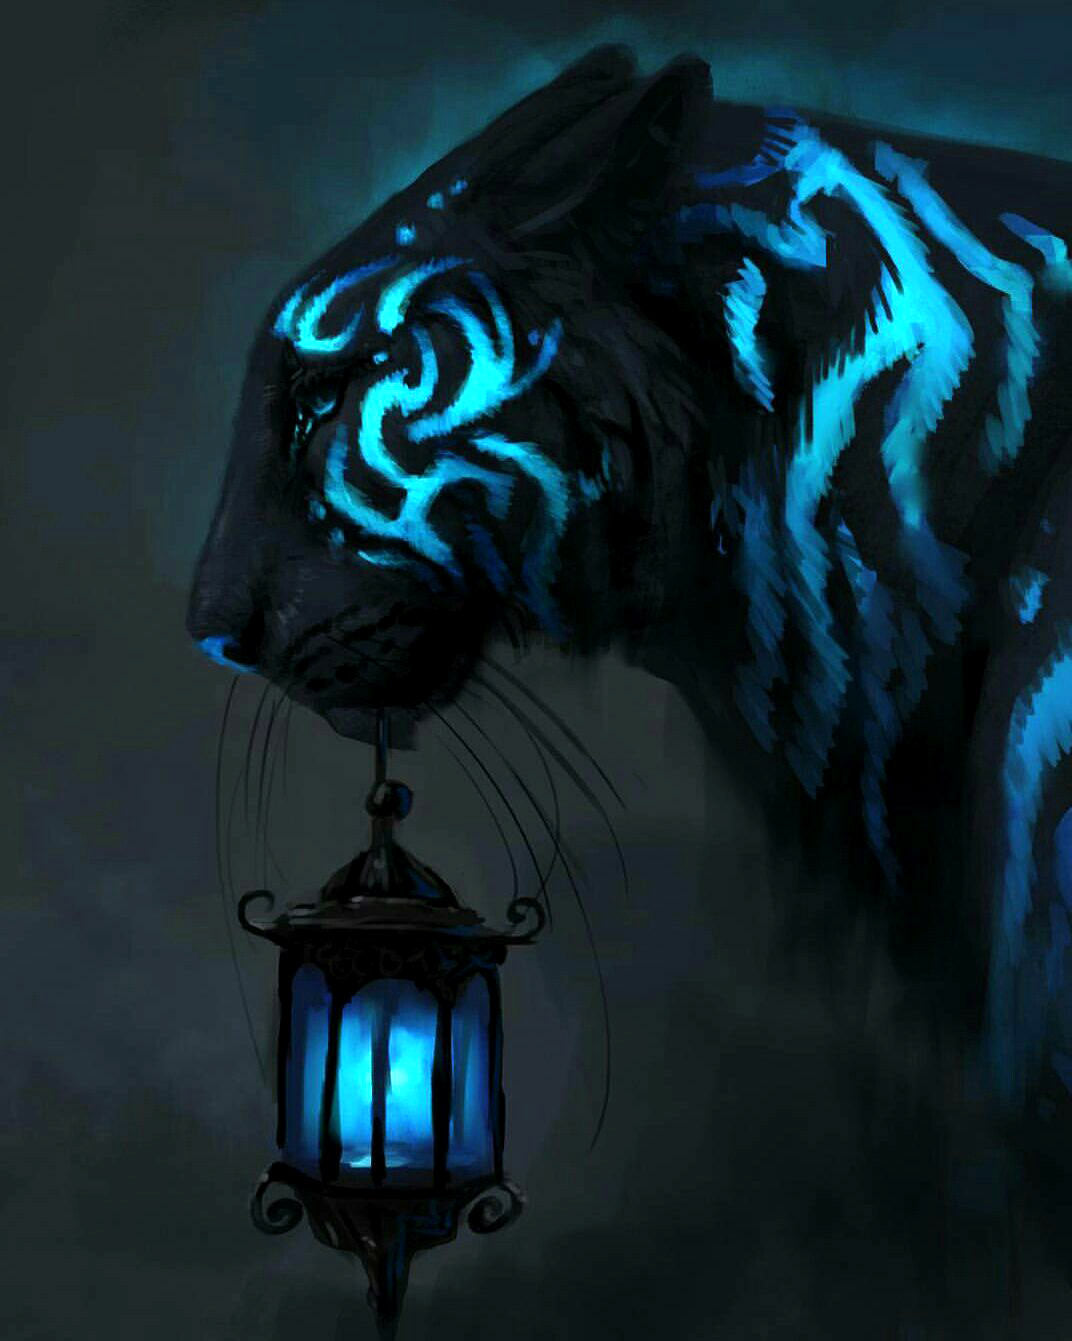 Glowing Tiger - Animal Diamond Painting – All Diamond Painting Art